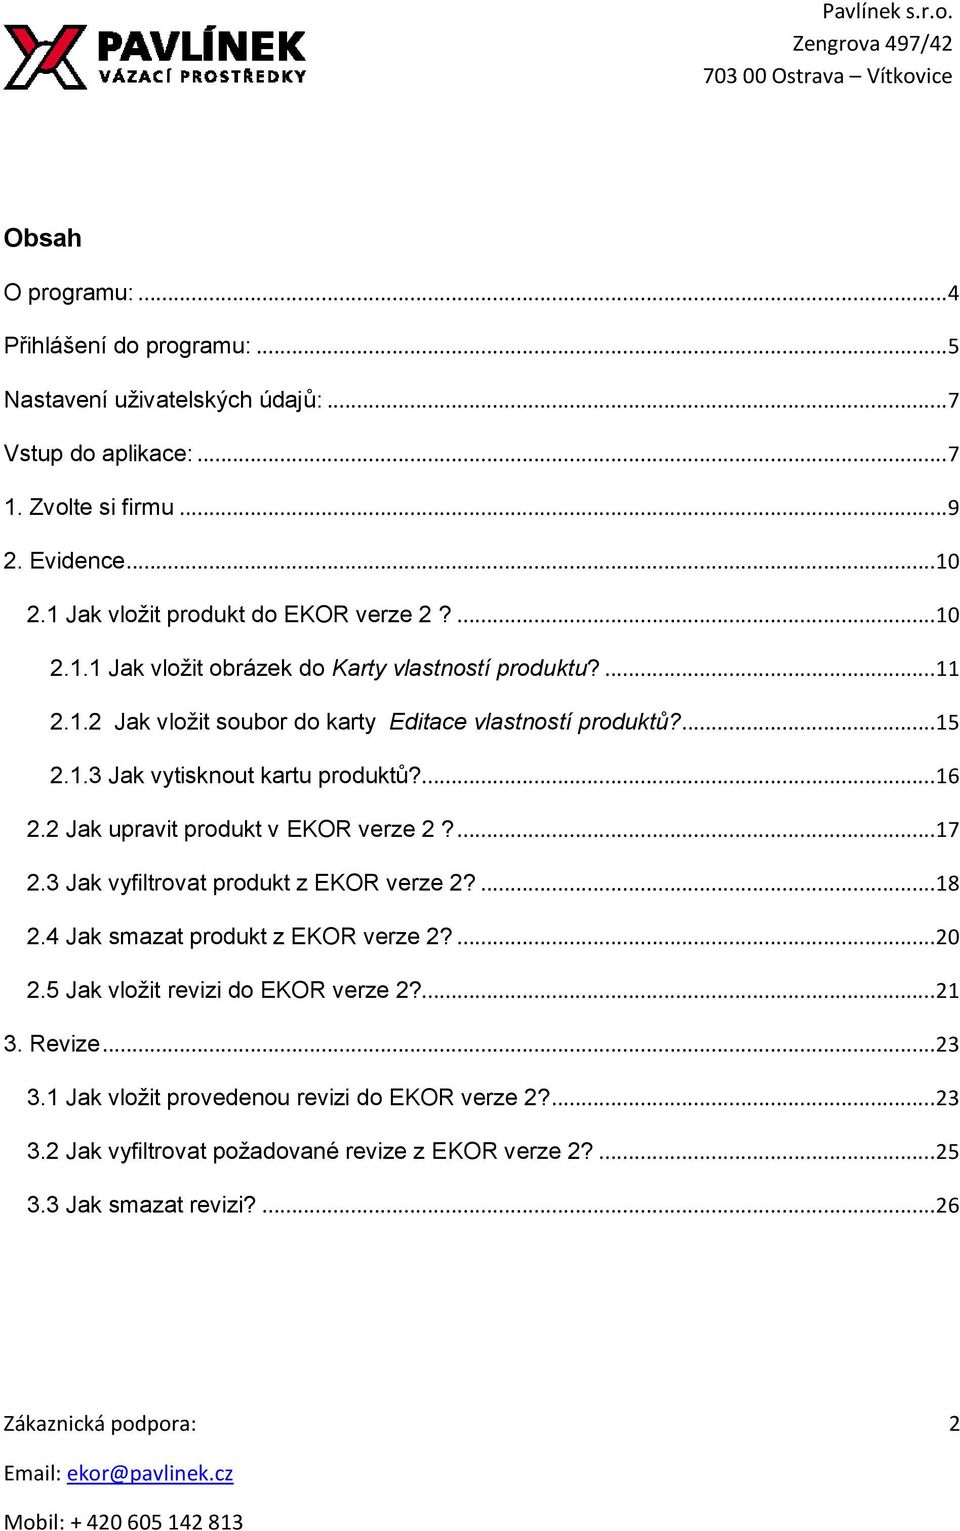 ... 16 2.2 Jak upravit produkt v EKOR verze 2?... 17 2.3 Jak vyfiltrovat produkt z EKOR verze 2?... 18 2.4 Jak smazat produkt z EKOR verze 2?... 20 2.